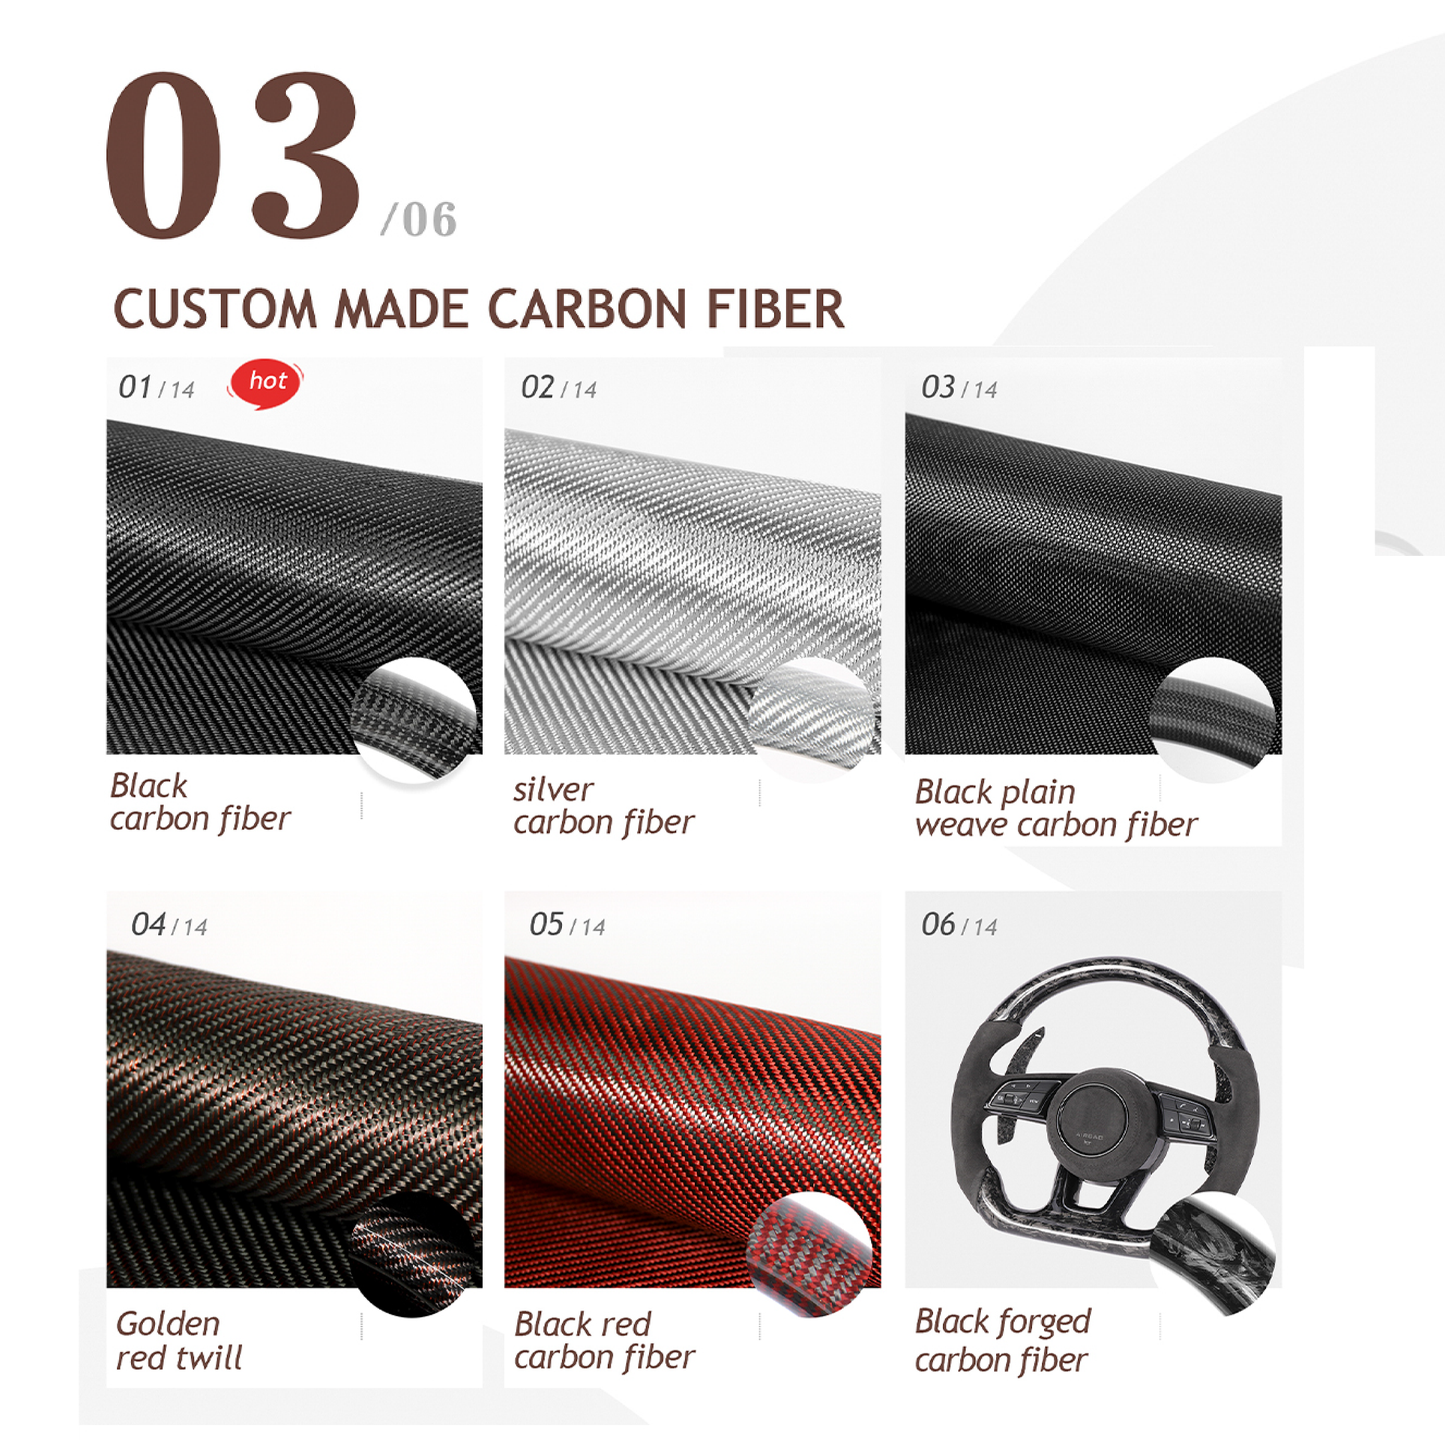 Full Custom Steering Wheel for BMW F Series